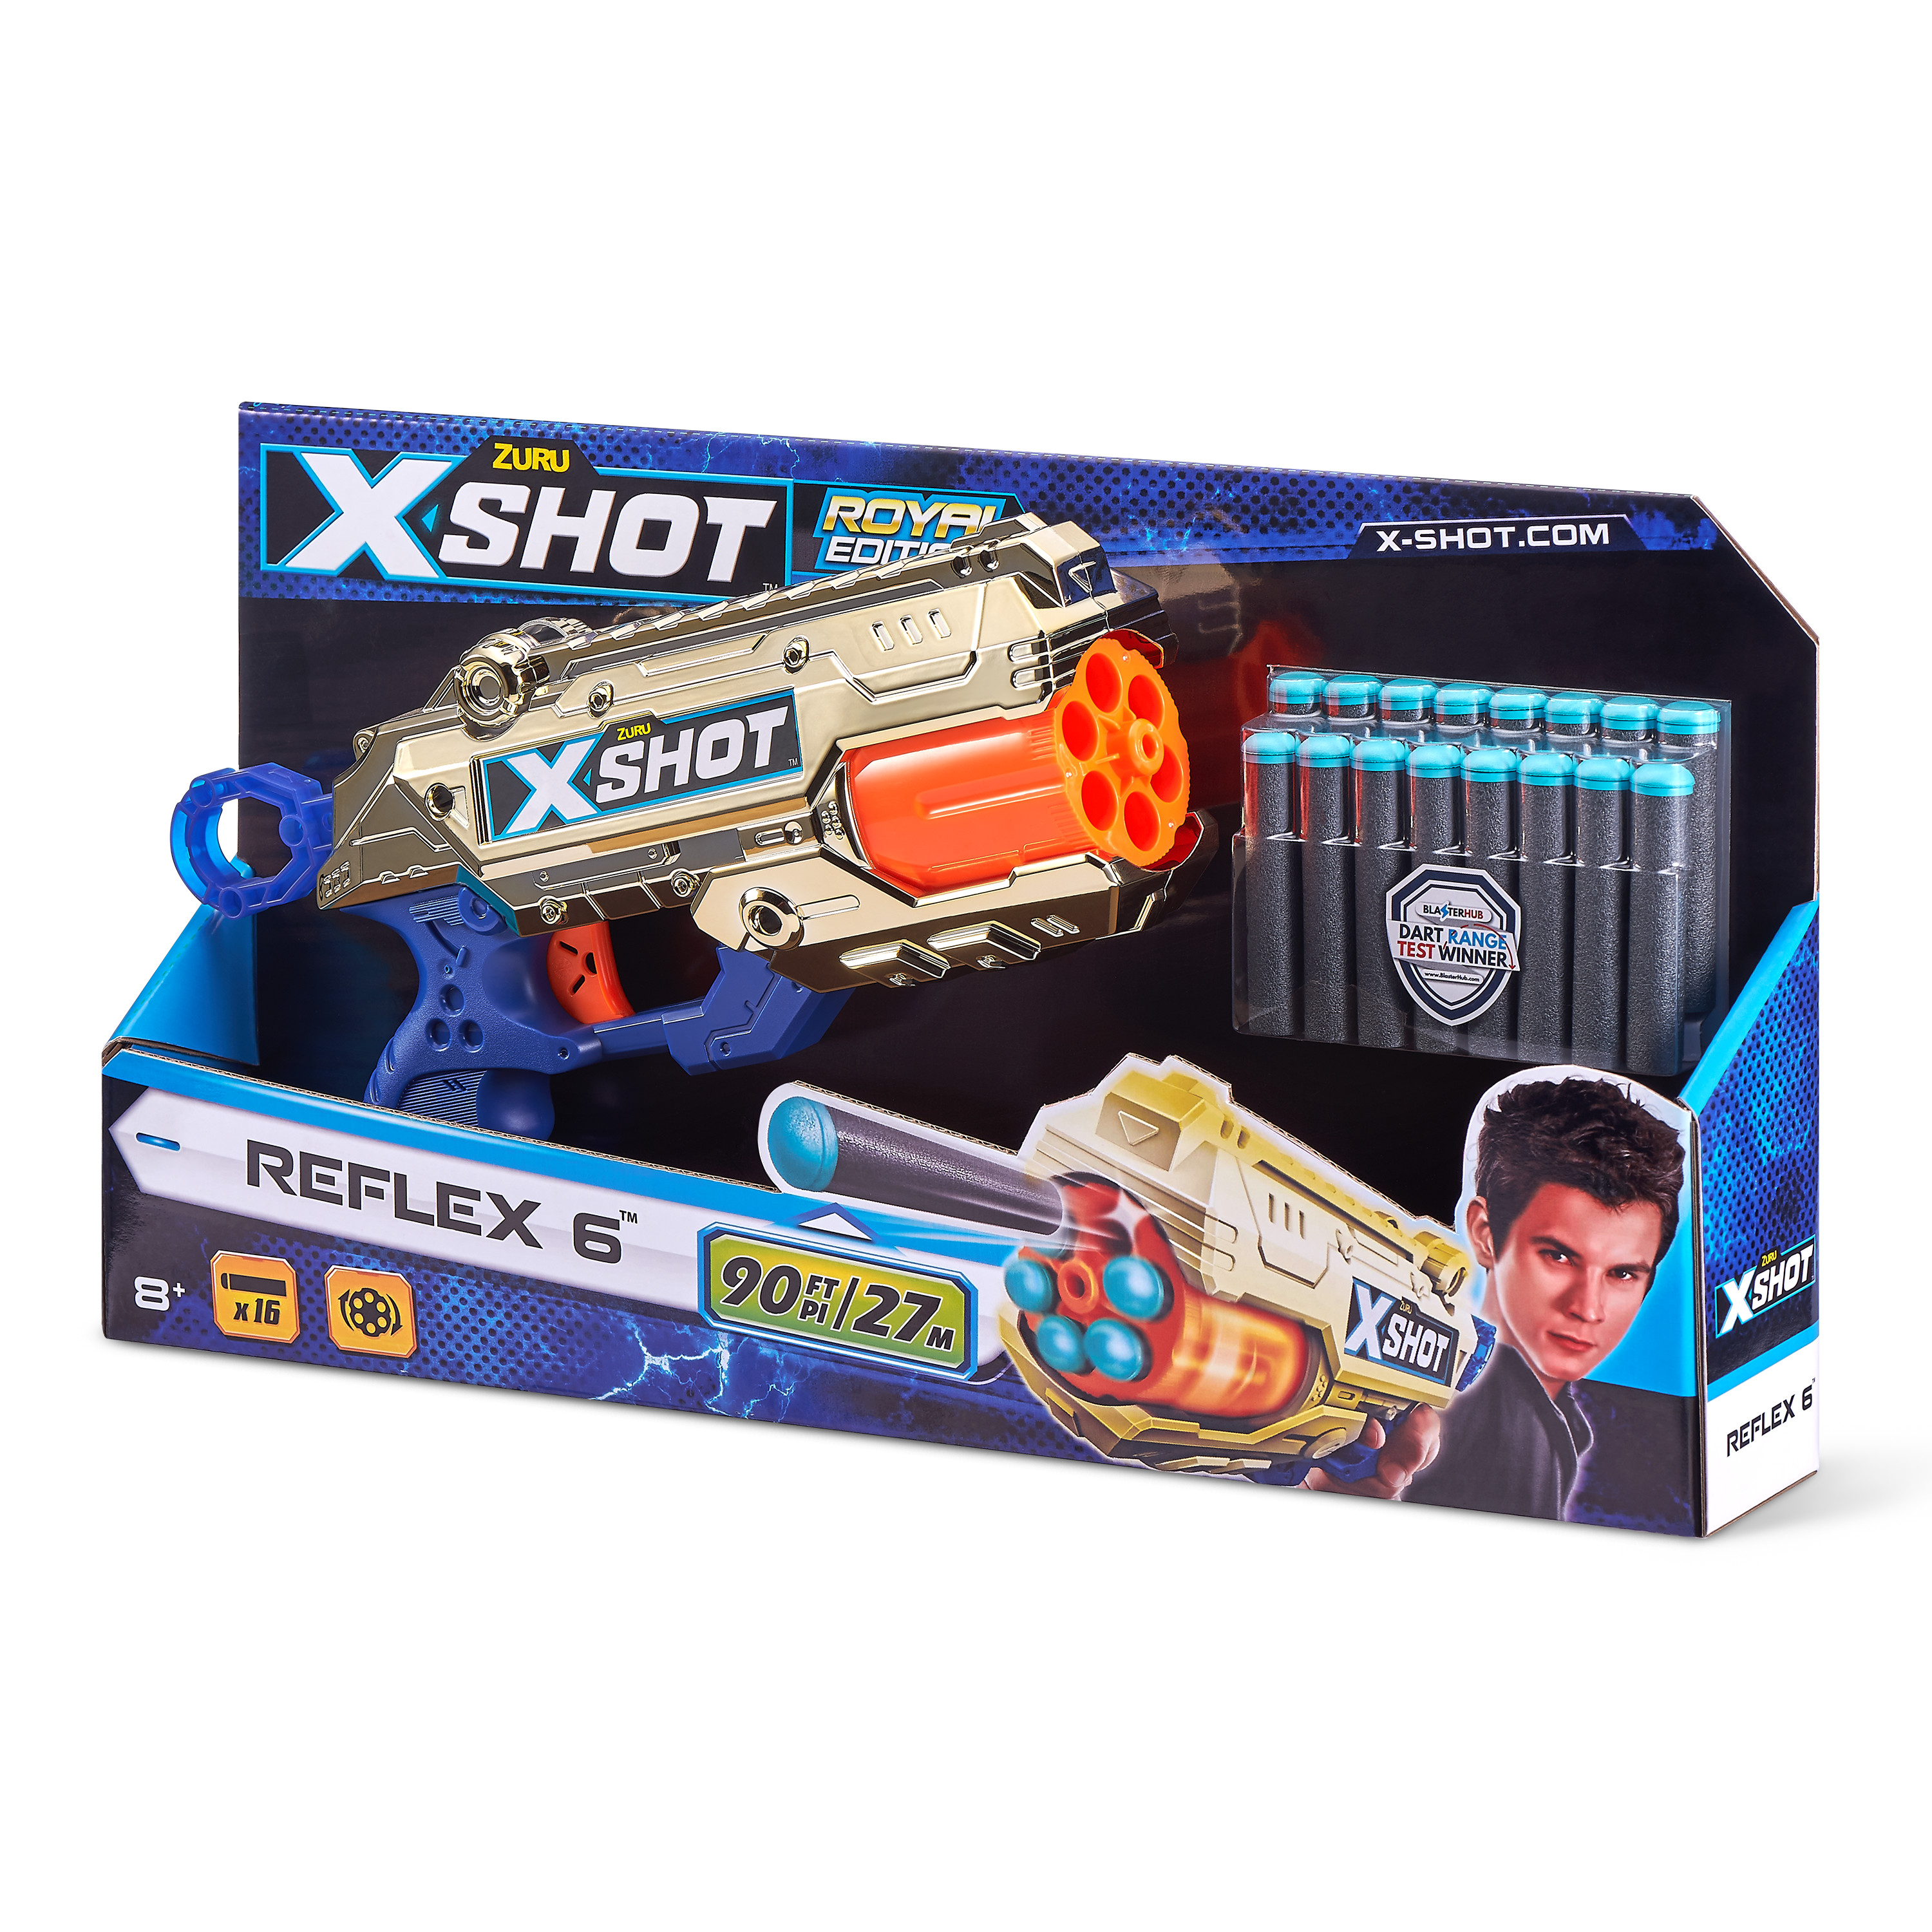 X-SHOT - Gold Reflex 6